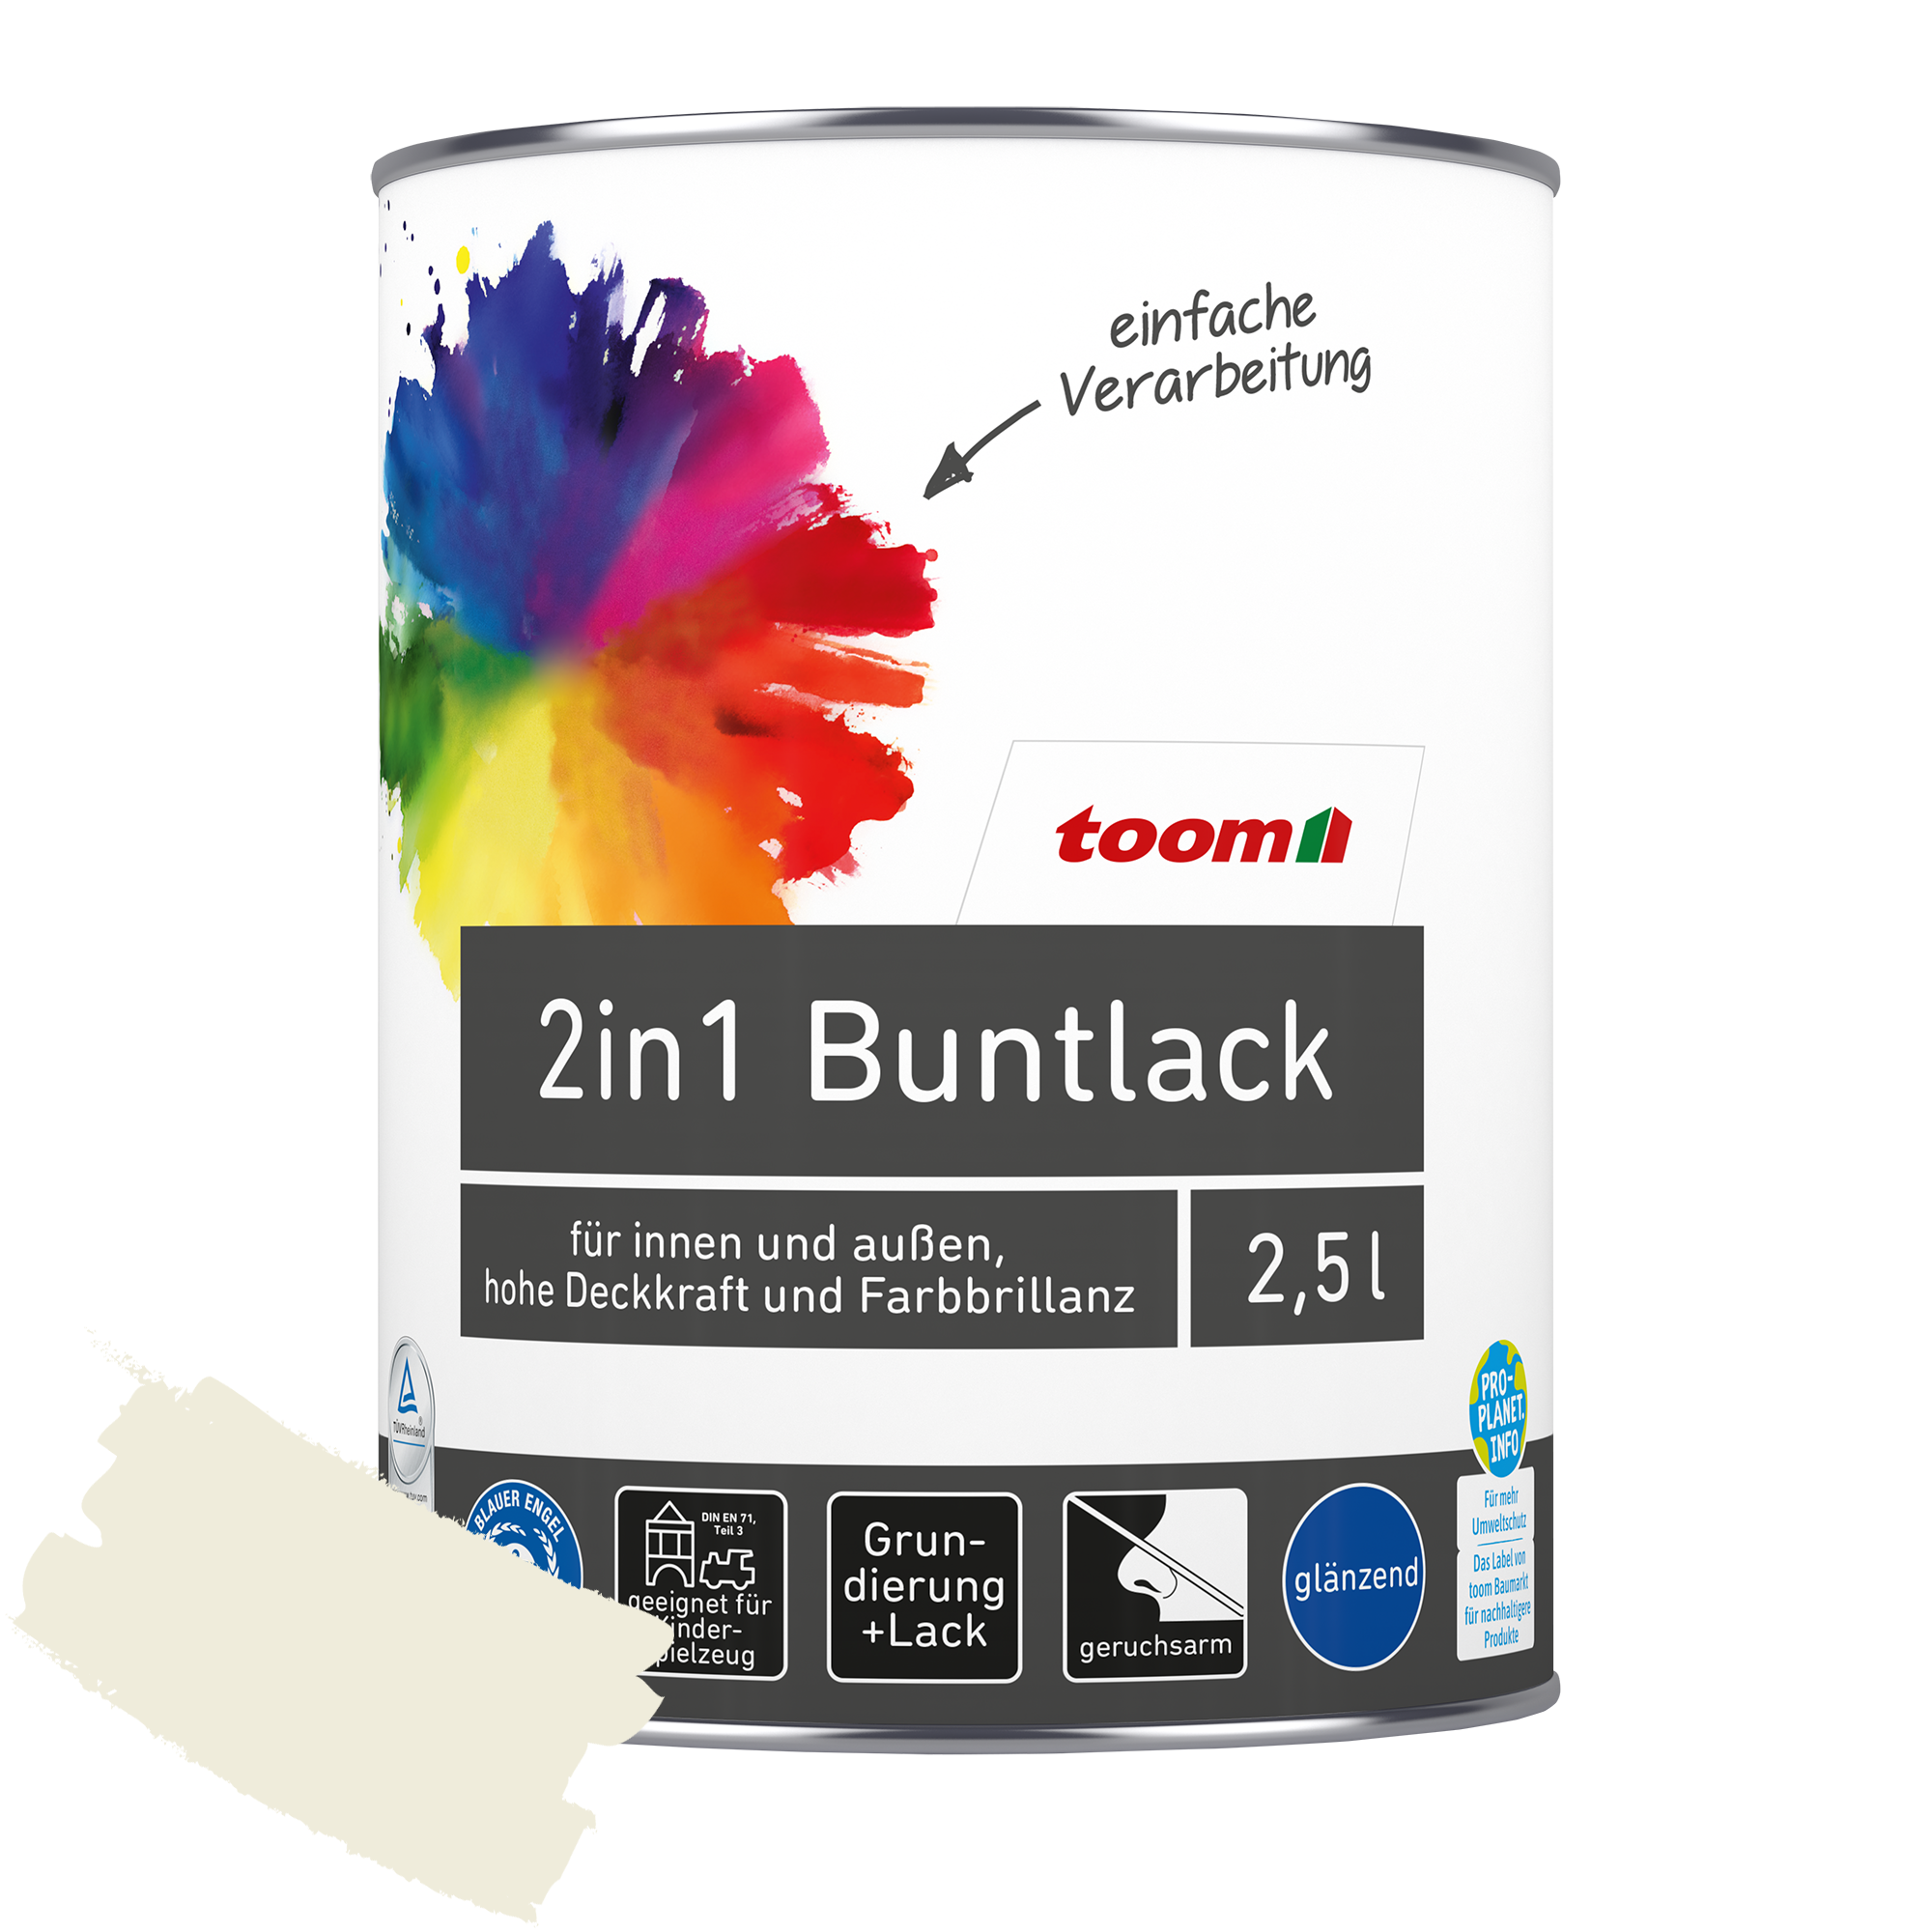 2in1 Buntlack 'Eisblume' weiß glänzend 2,5 l + product picture